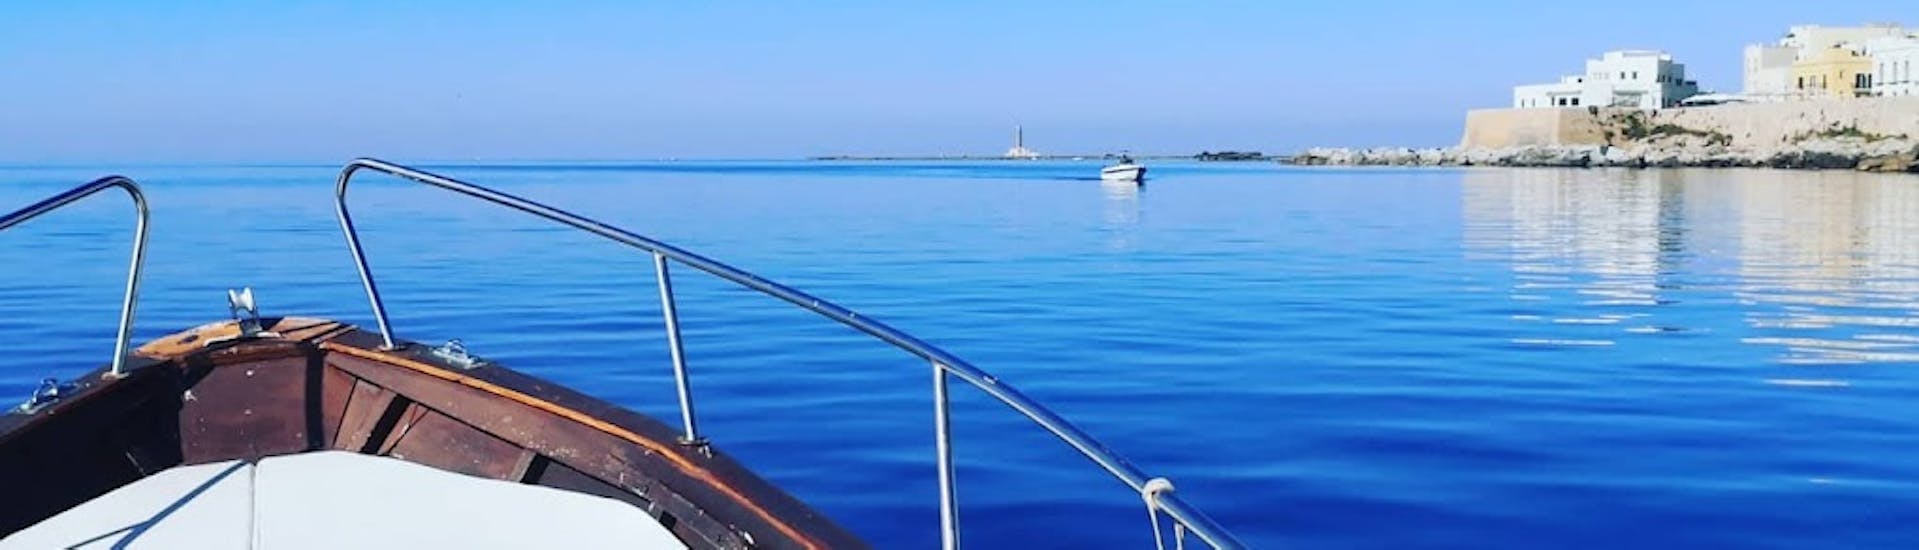 Bootstour von Gallipoli - Sant'Andrea Island  & Schwimmen.